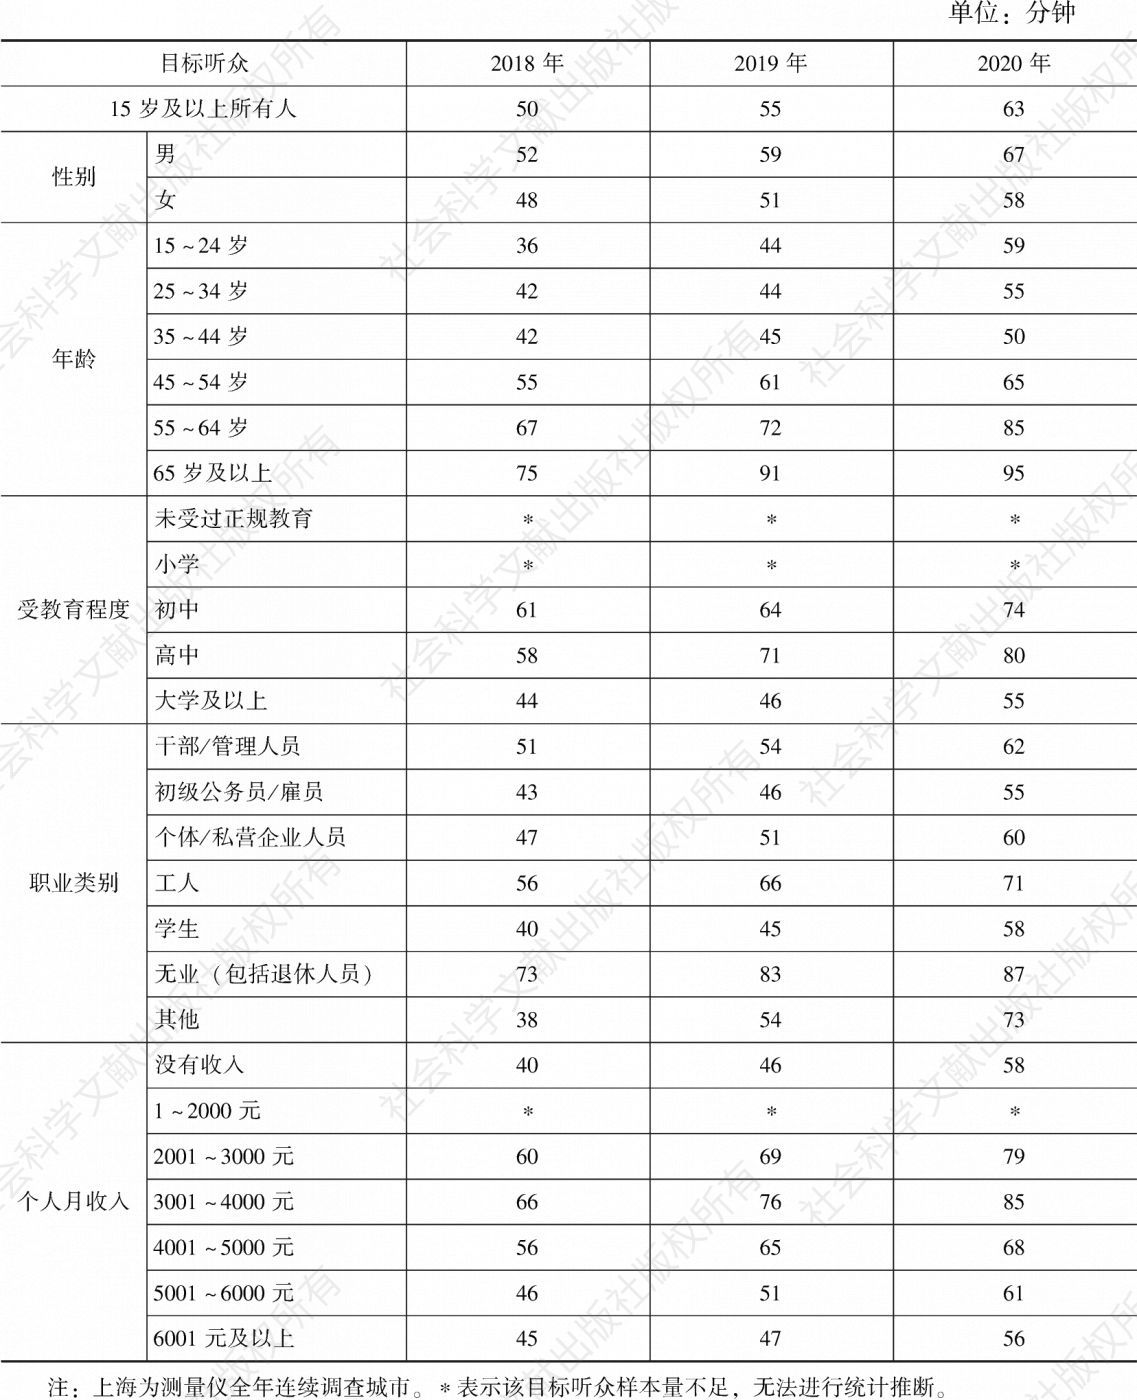 表4.16.1 2018～2020年上海各目标听众人均收听时间